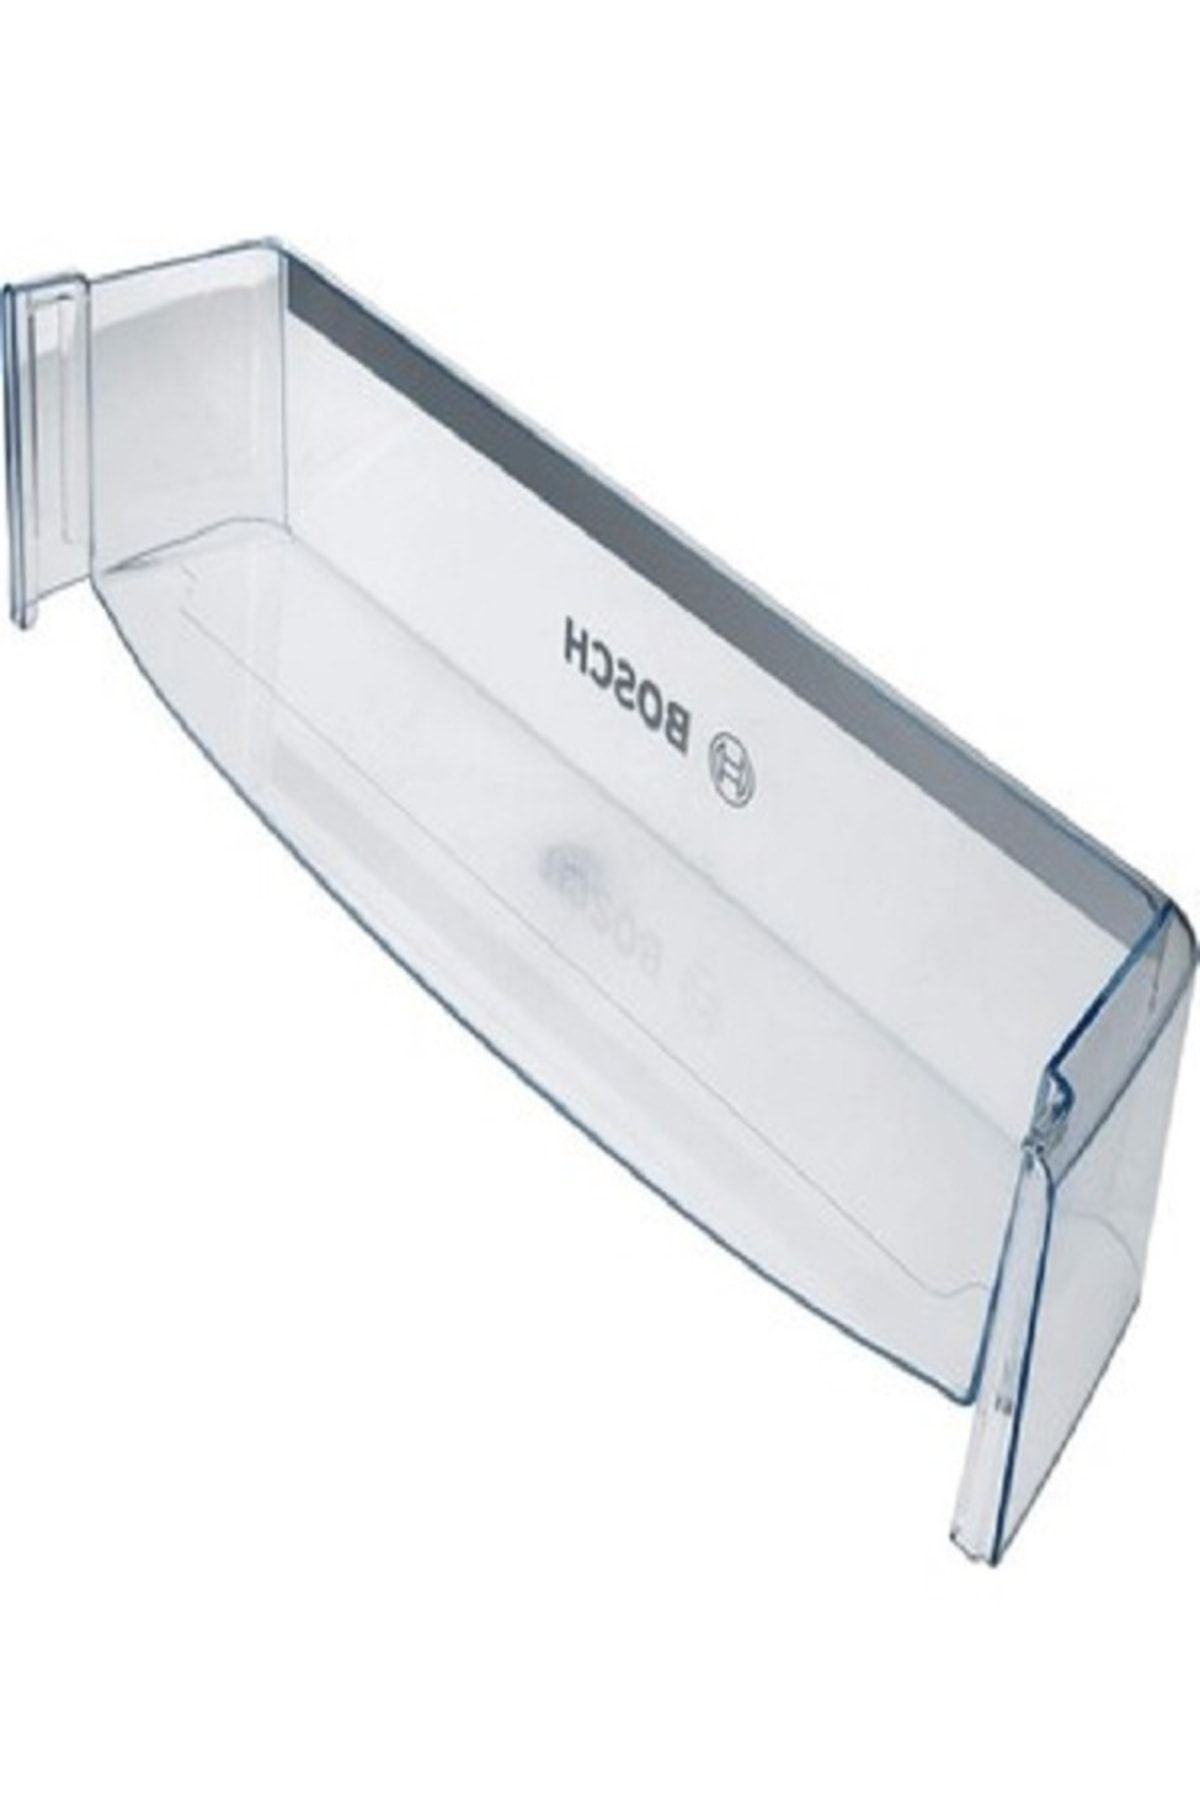 Bosch Siemens - Profilo Buzdolabı Kapı Şişe Rafı